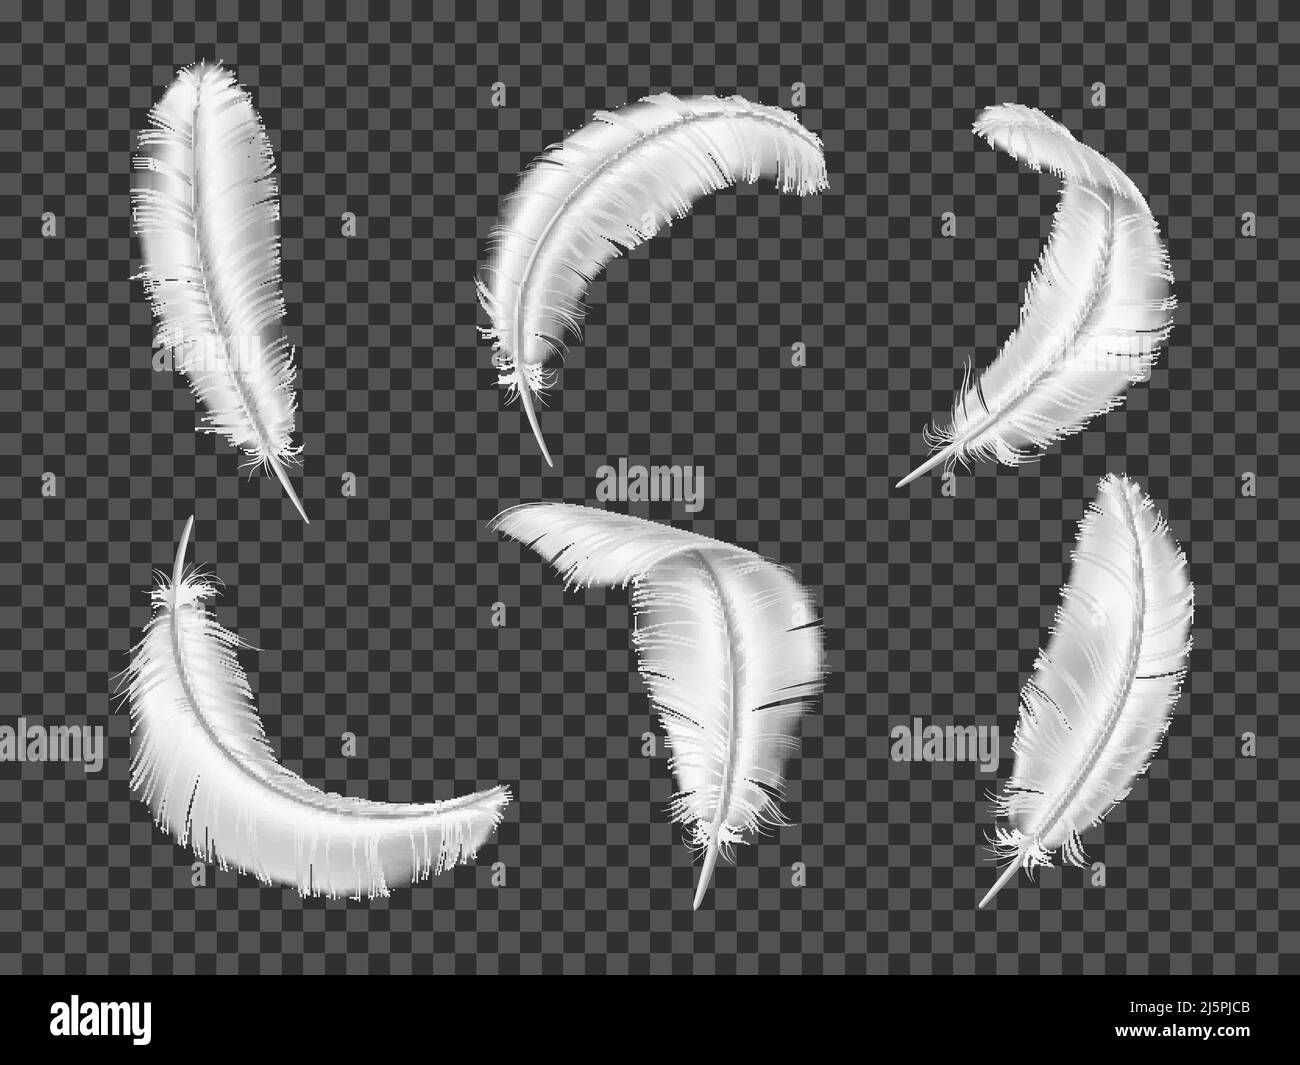 Realistische weiße Federn. 3D Vögel Gefieder Elemente. Isolierte flauschige und glatte Objekte. Engelsflügel. Unterschiedlich gebogene Gänse- oder Schwanenquills. Fliegen Stock Vektor